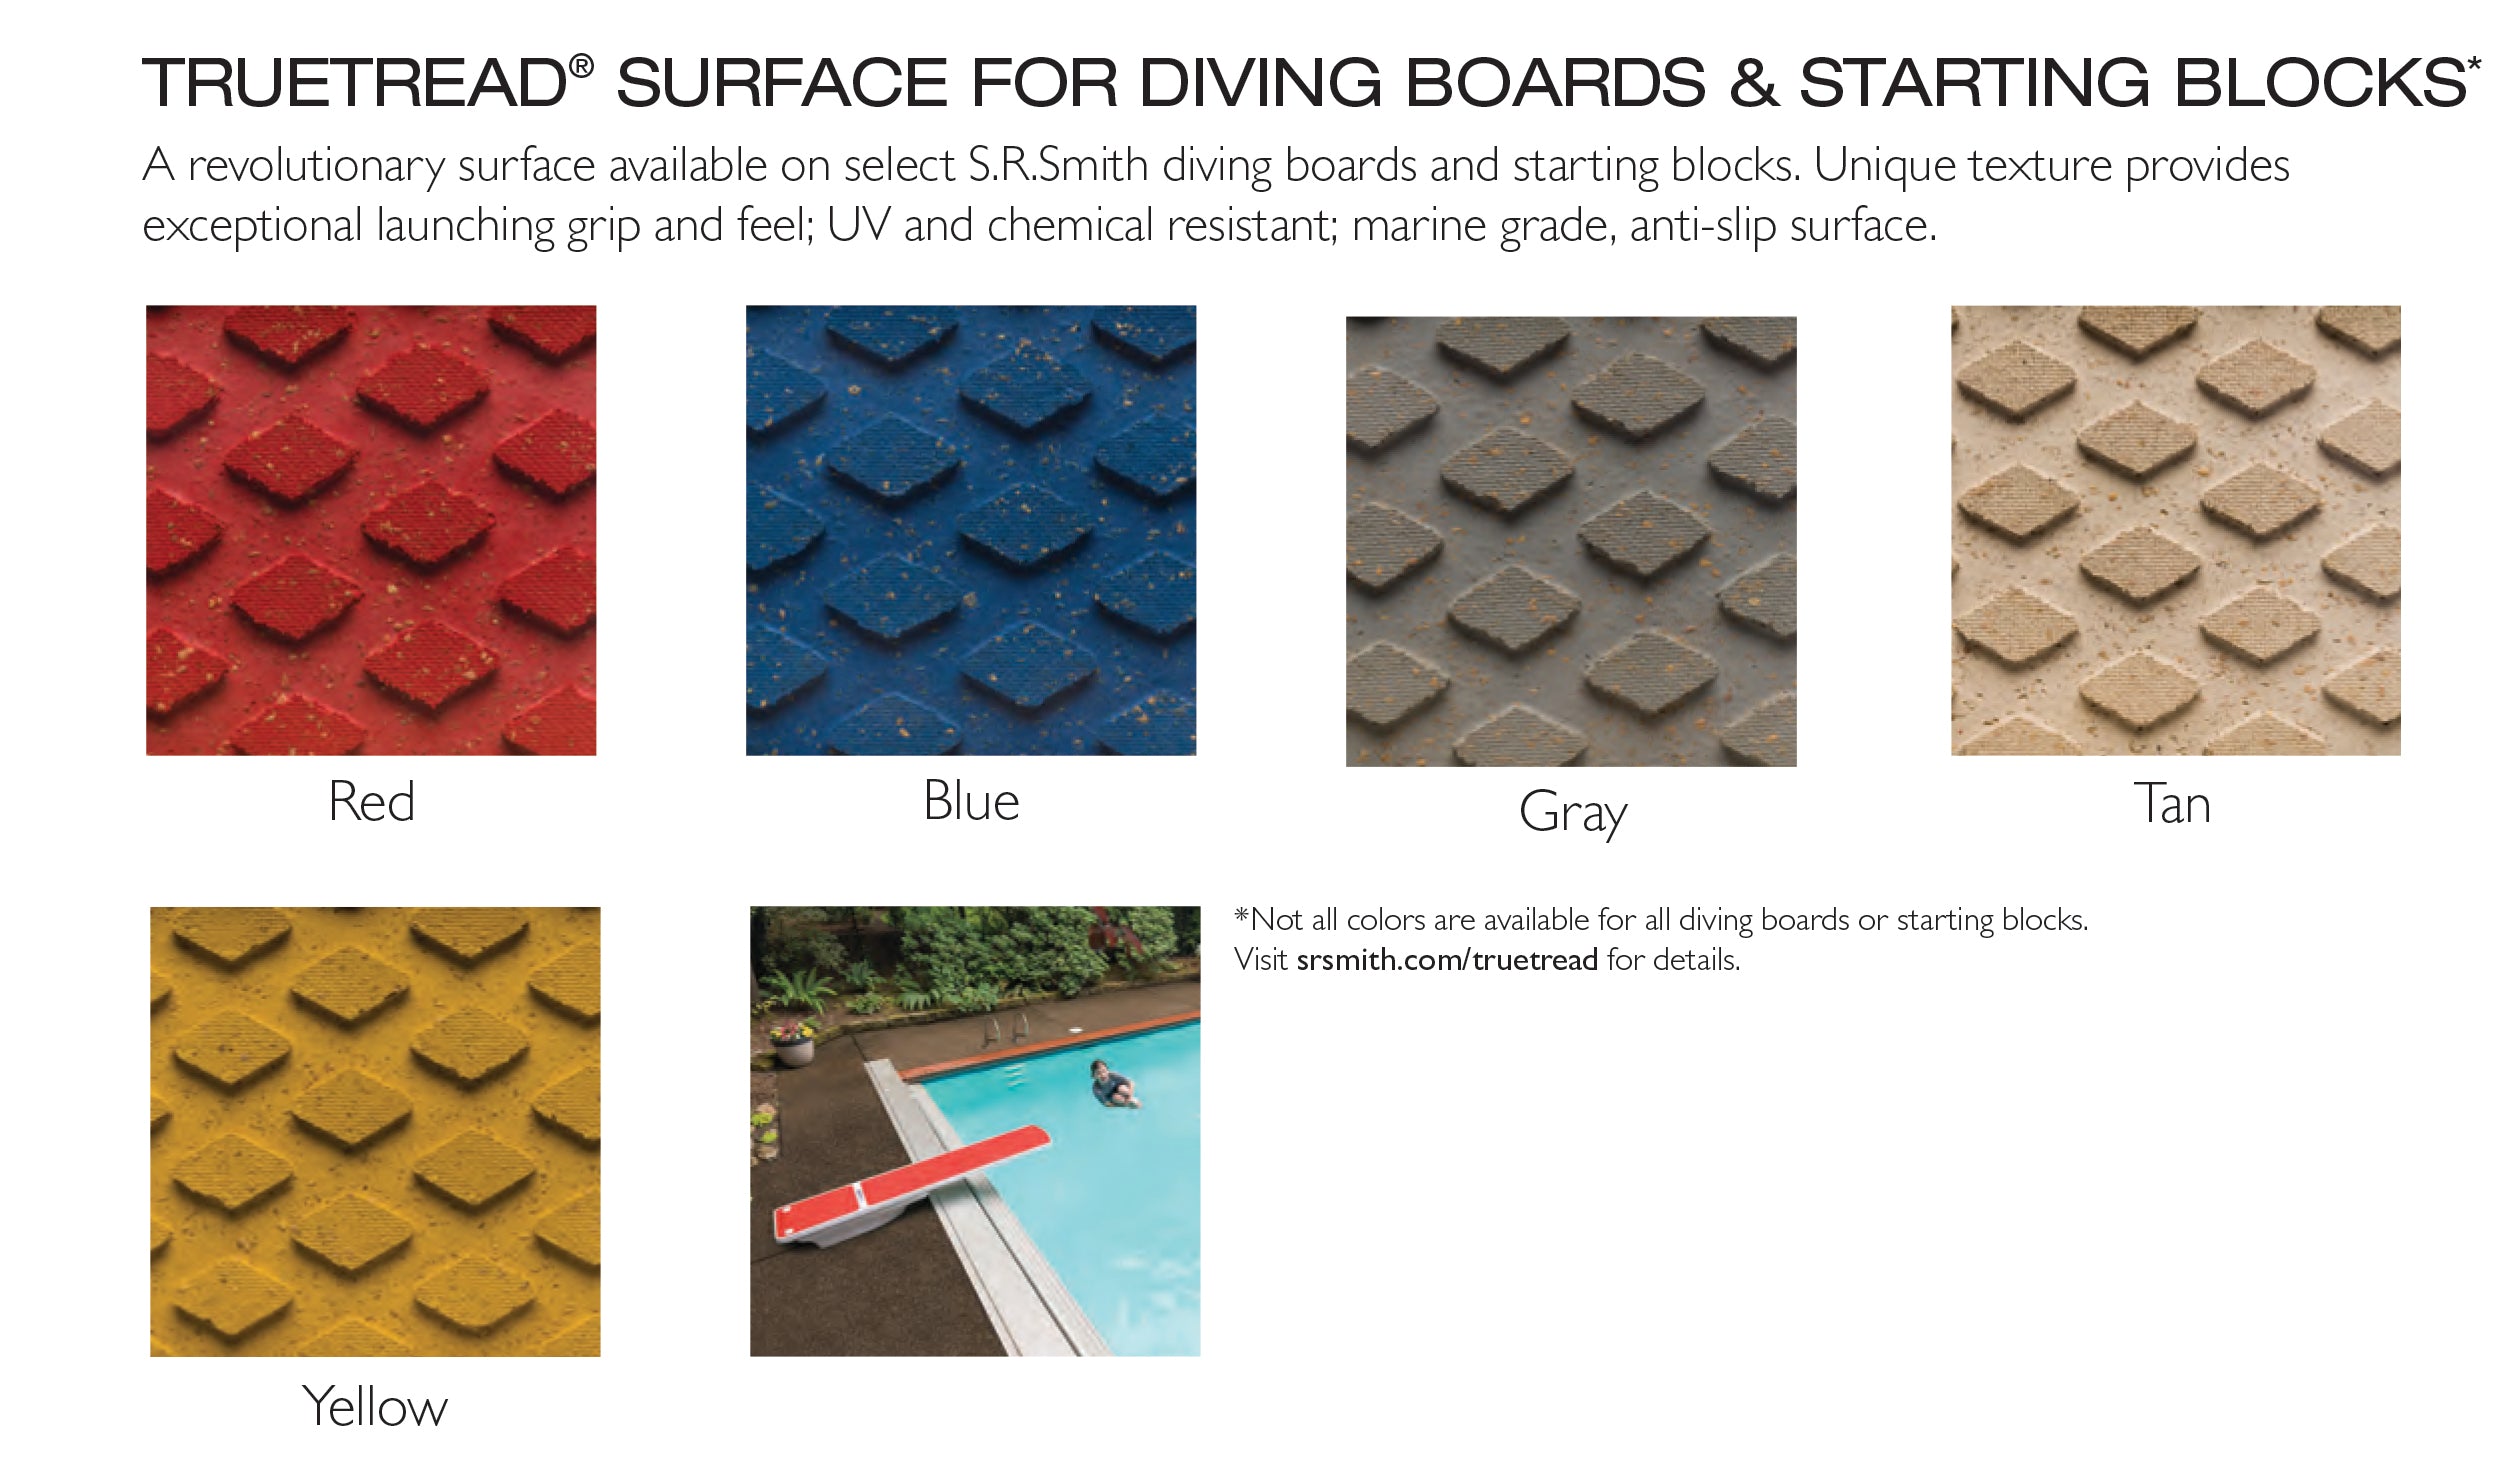 Salt Pool Jump System With 8 Foot TrueTread Board - White Stand With White Board and Tan TrueTread